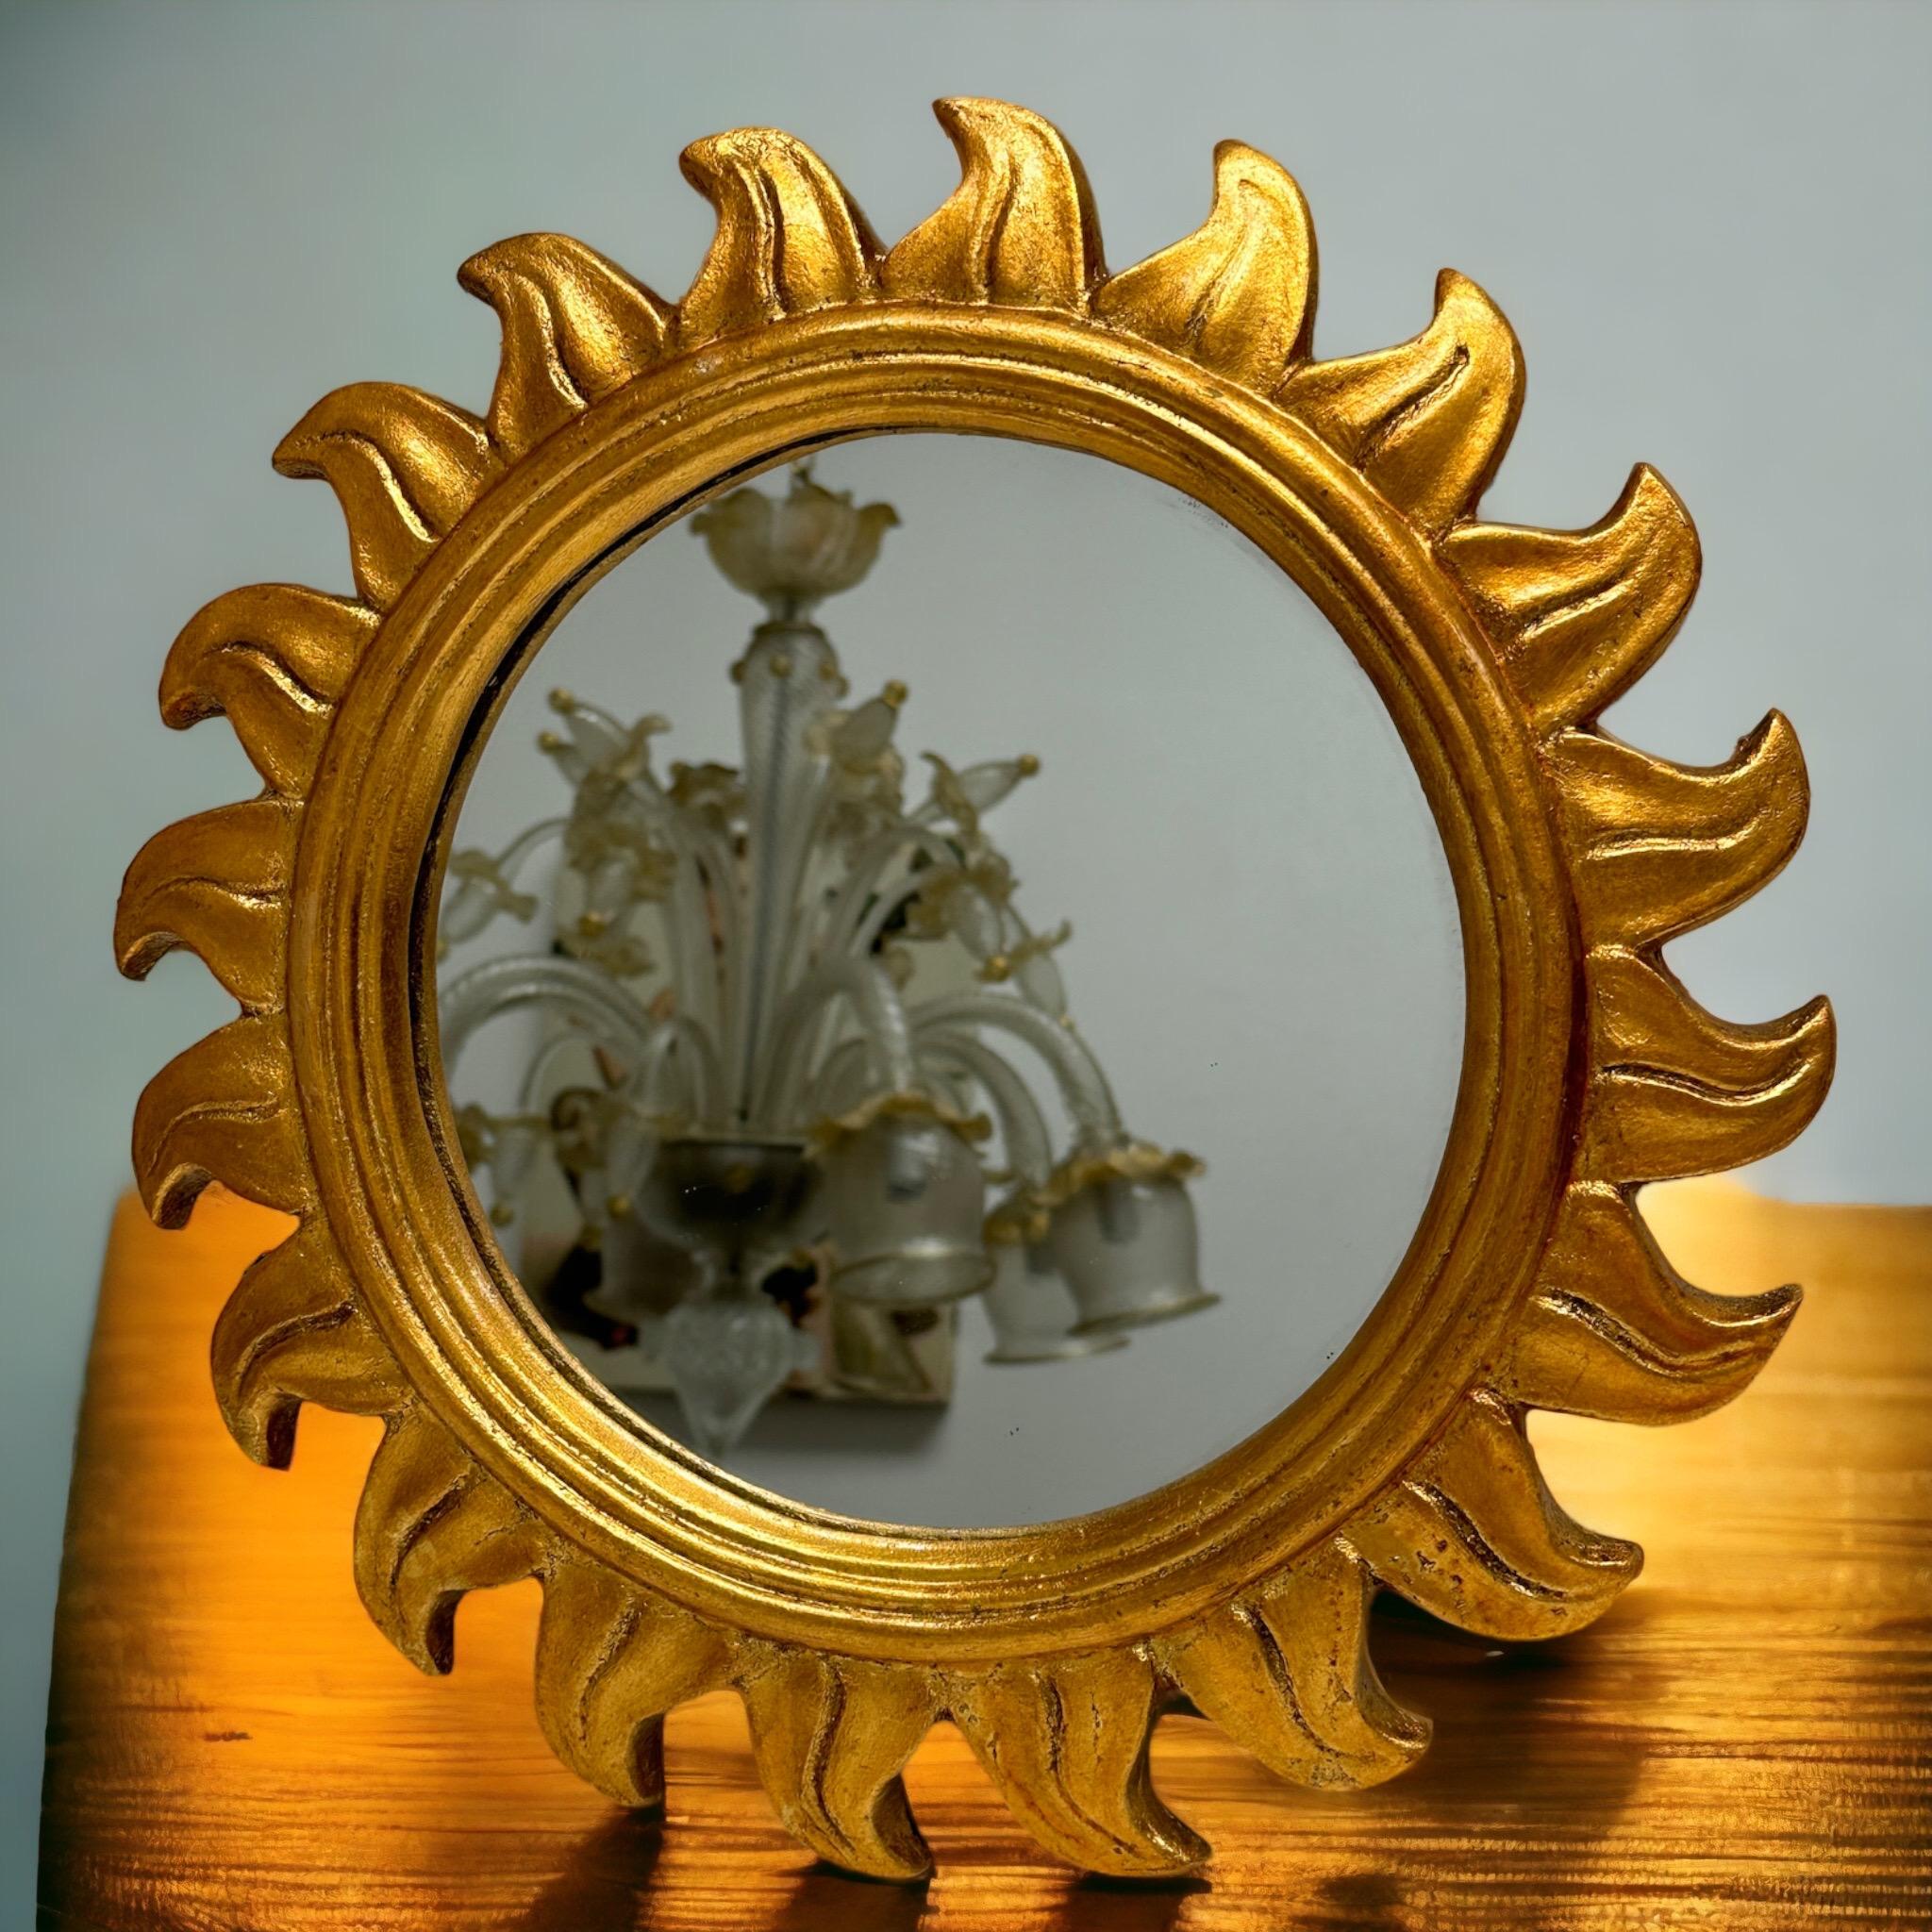 Un magnifique miroir solaire en forme d'étoile ou de soleil. Fabriqué en résine dorée. Aucun éclat, aucune fissure, aucune réparation. Il mesure environ 14,5 pouces de diamètre, le miroir lui-même mesure environ 9,13 pouces de diamètre. Il se tient